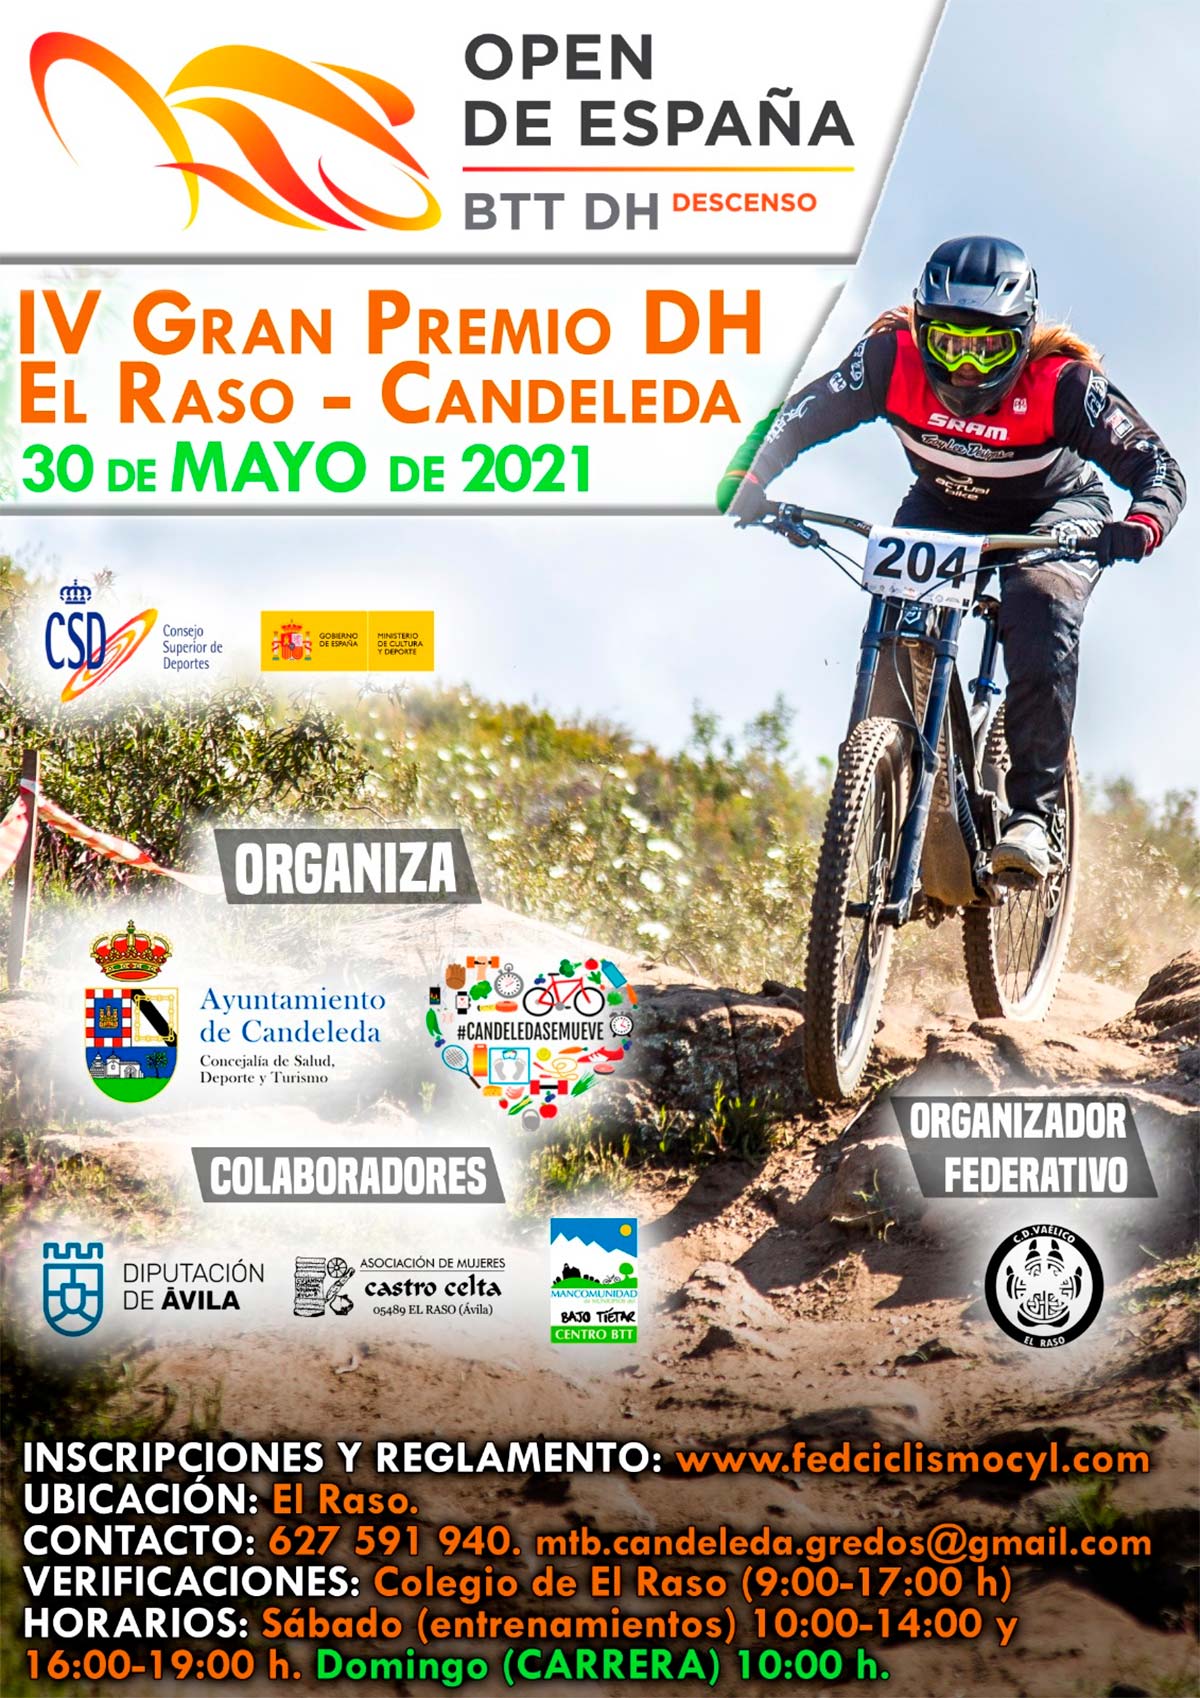 En TodoMountainBike: El Gran Premio DH El Raso-Candeleda inaugura el Open de España de Descenso 2021